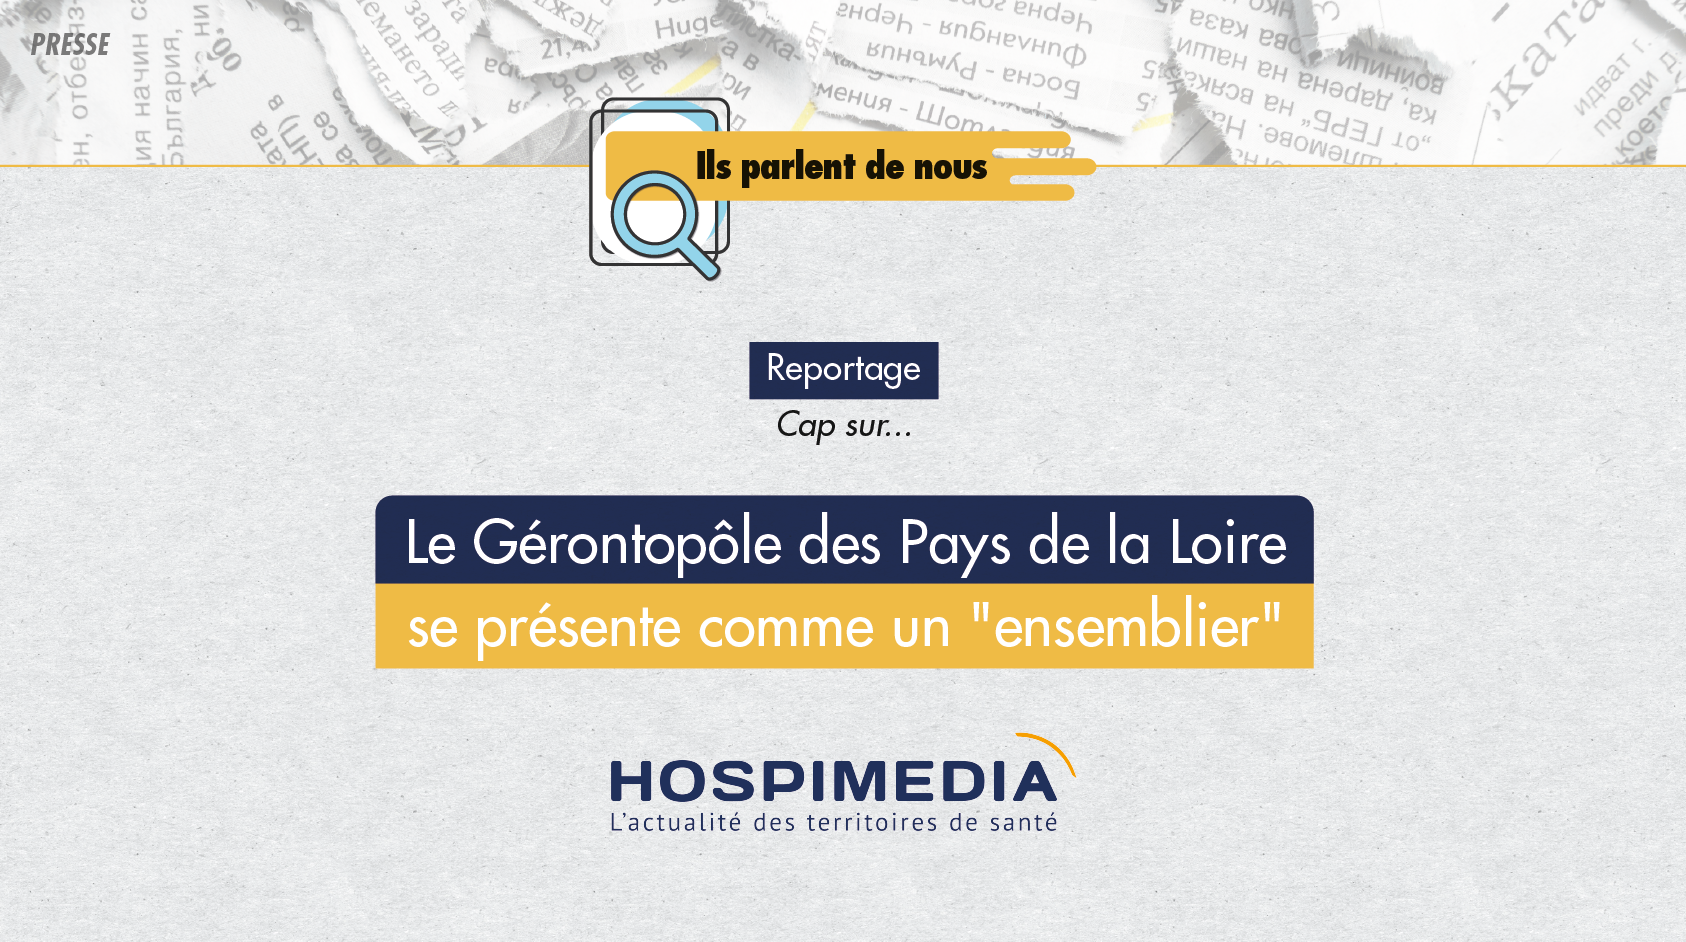 Découvrez l'article réalisé par le journal Hospimedia sur le Gérontopôle des Pays de la Loire.